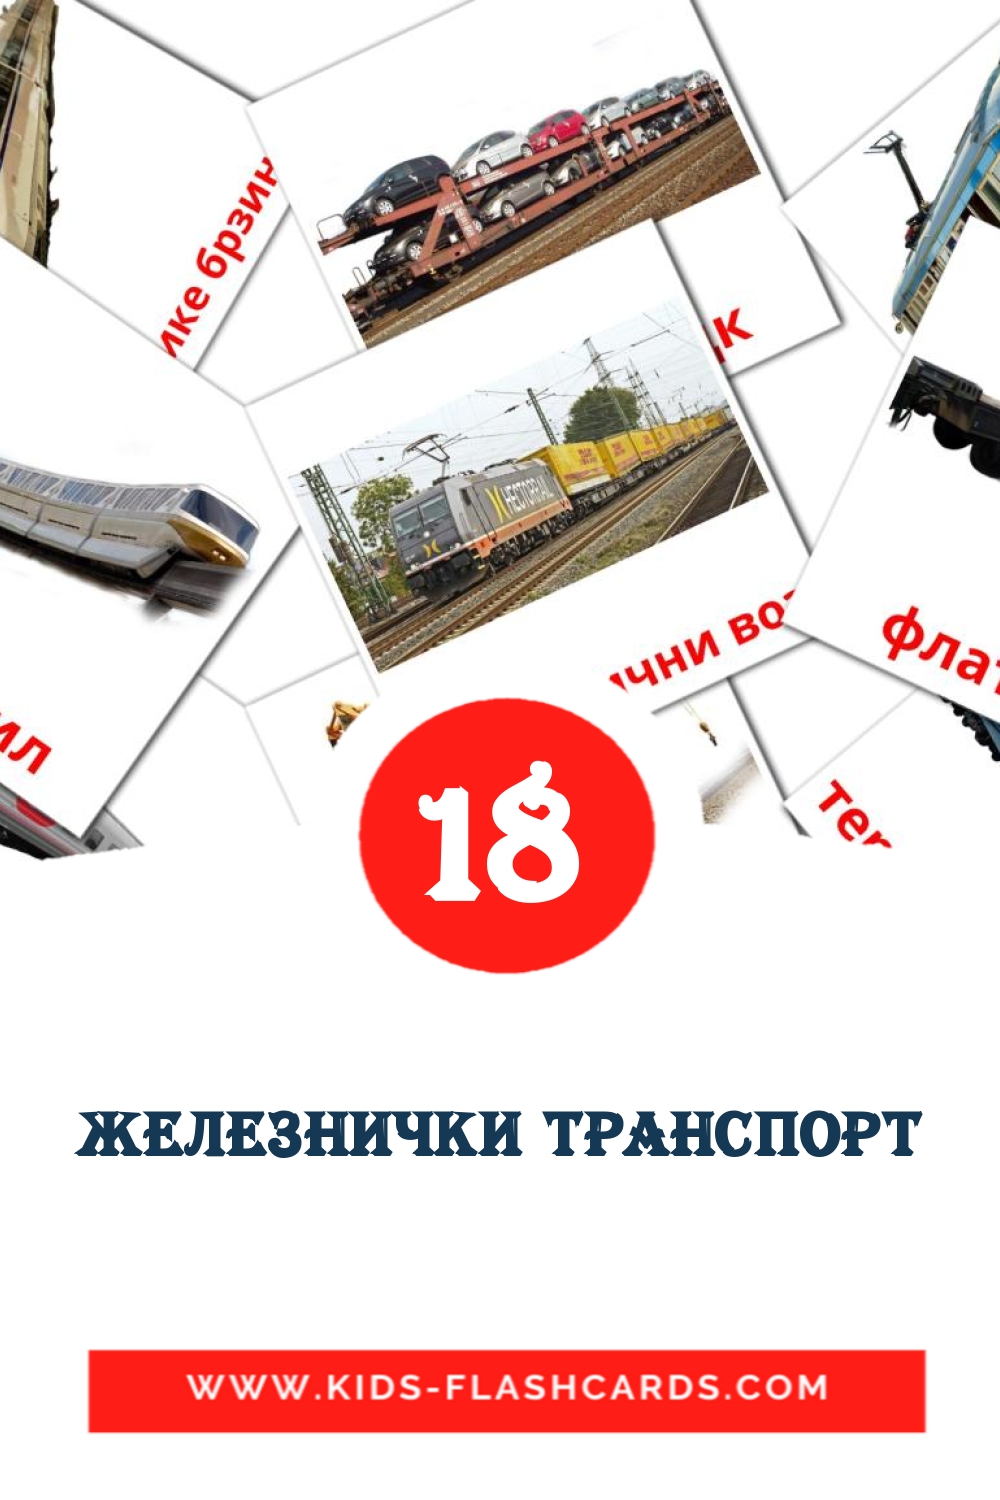 18 Железнички транспорт fotokaarten voor kleuters in het servisch(cyrillisch)